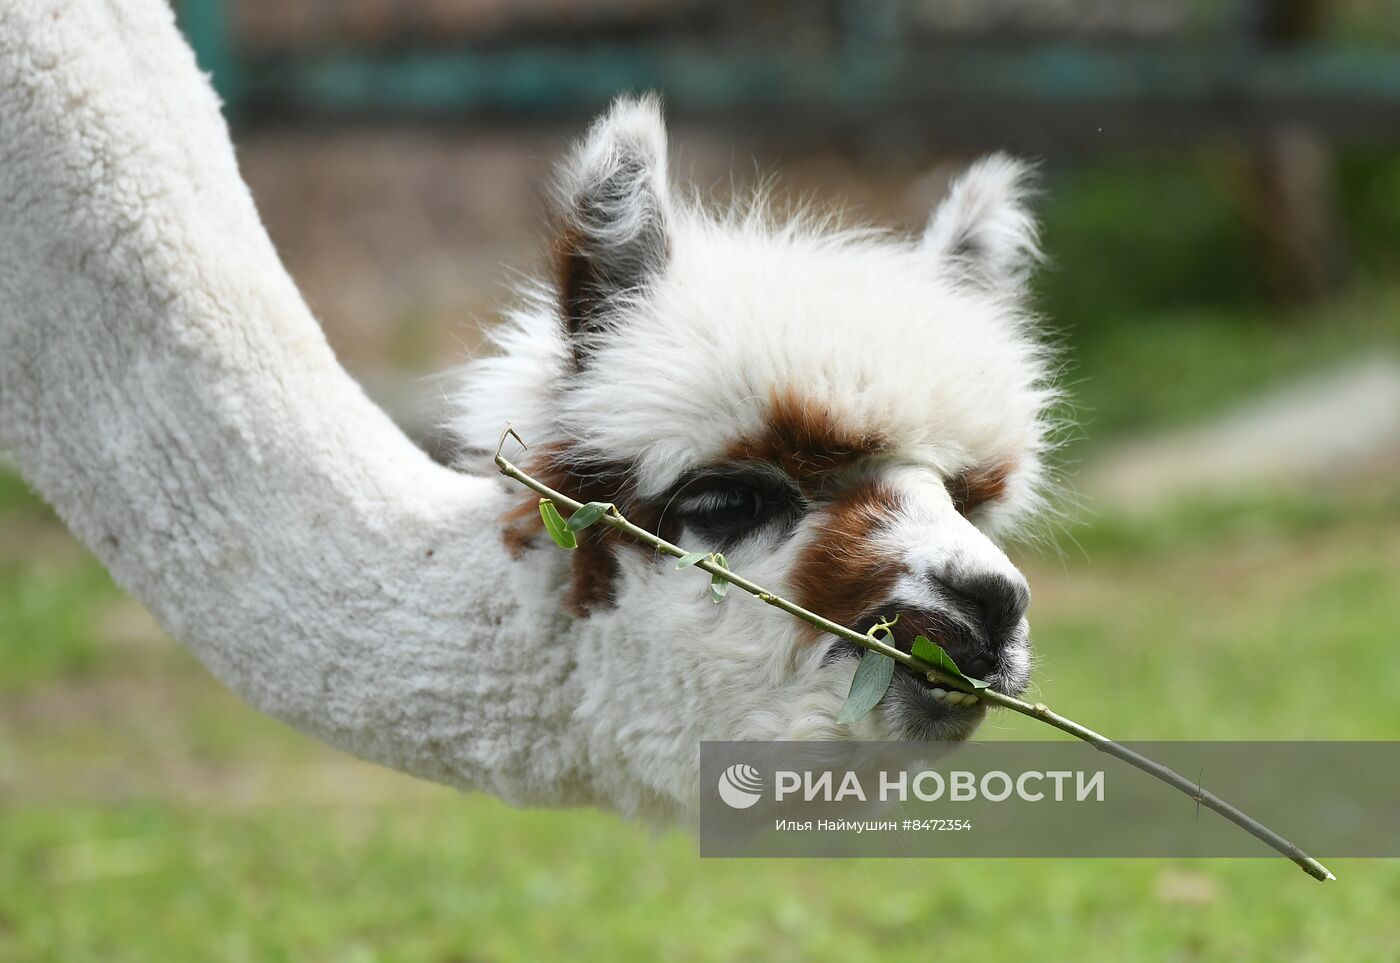 Парк флоры и фауны "Роев ручей" в Красноярске